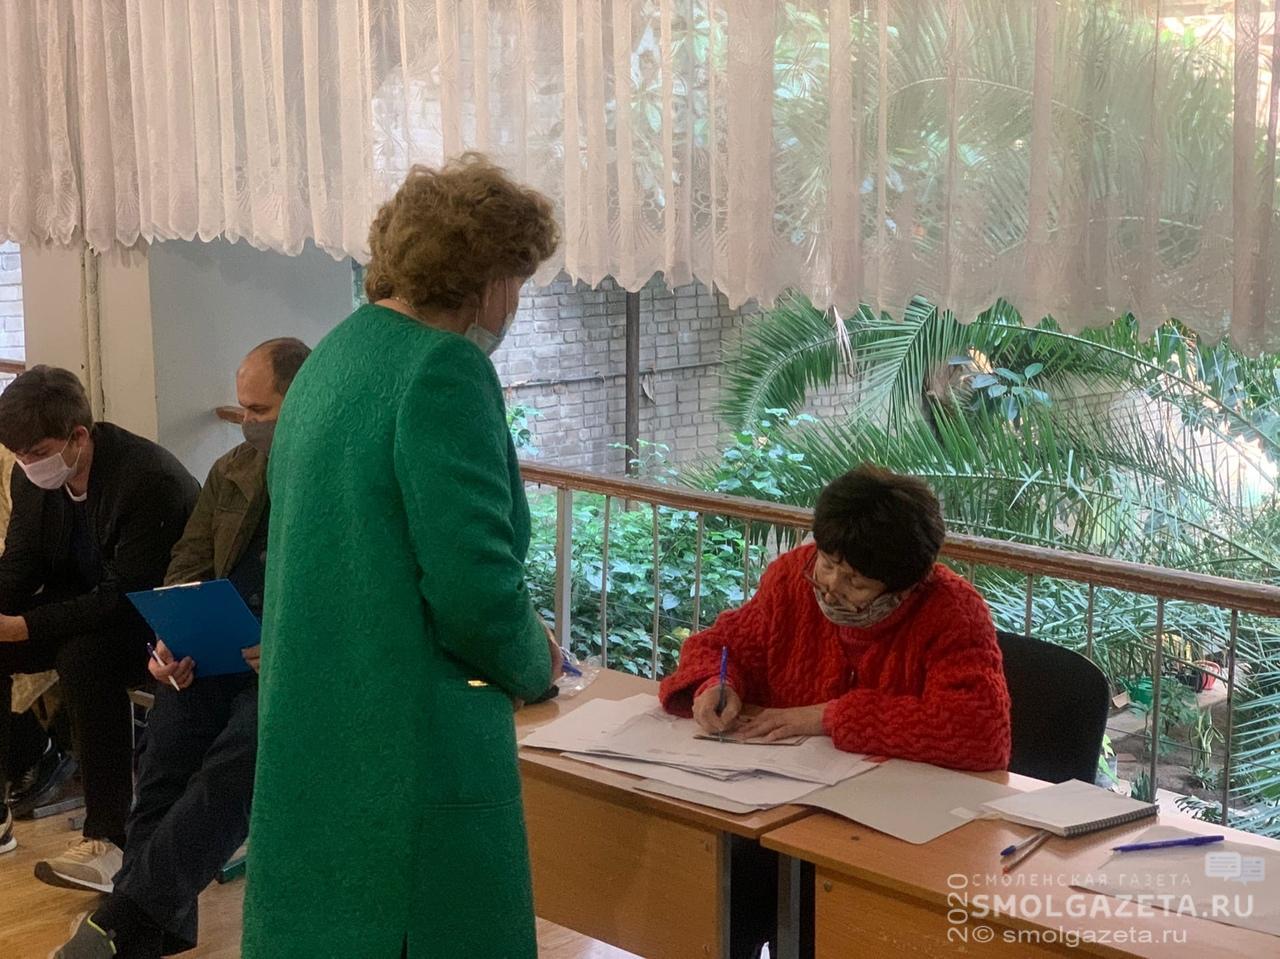 К 15 часам в Смоленской области проголосовали почти 25 % избирателей